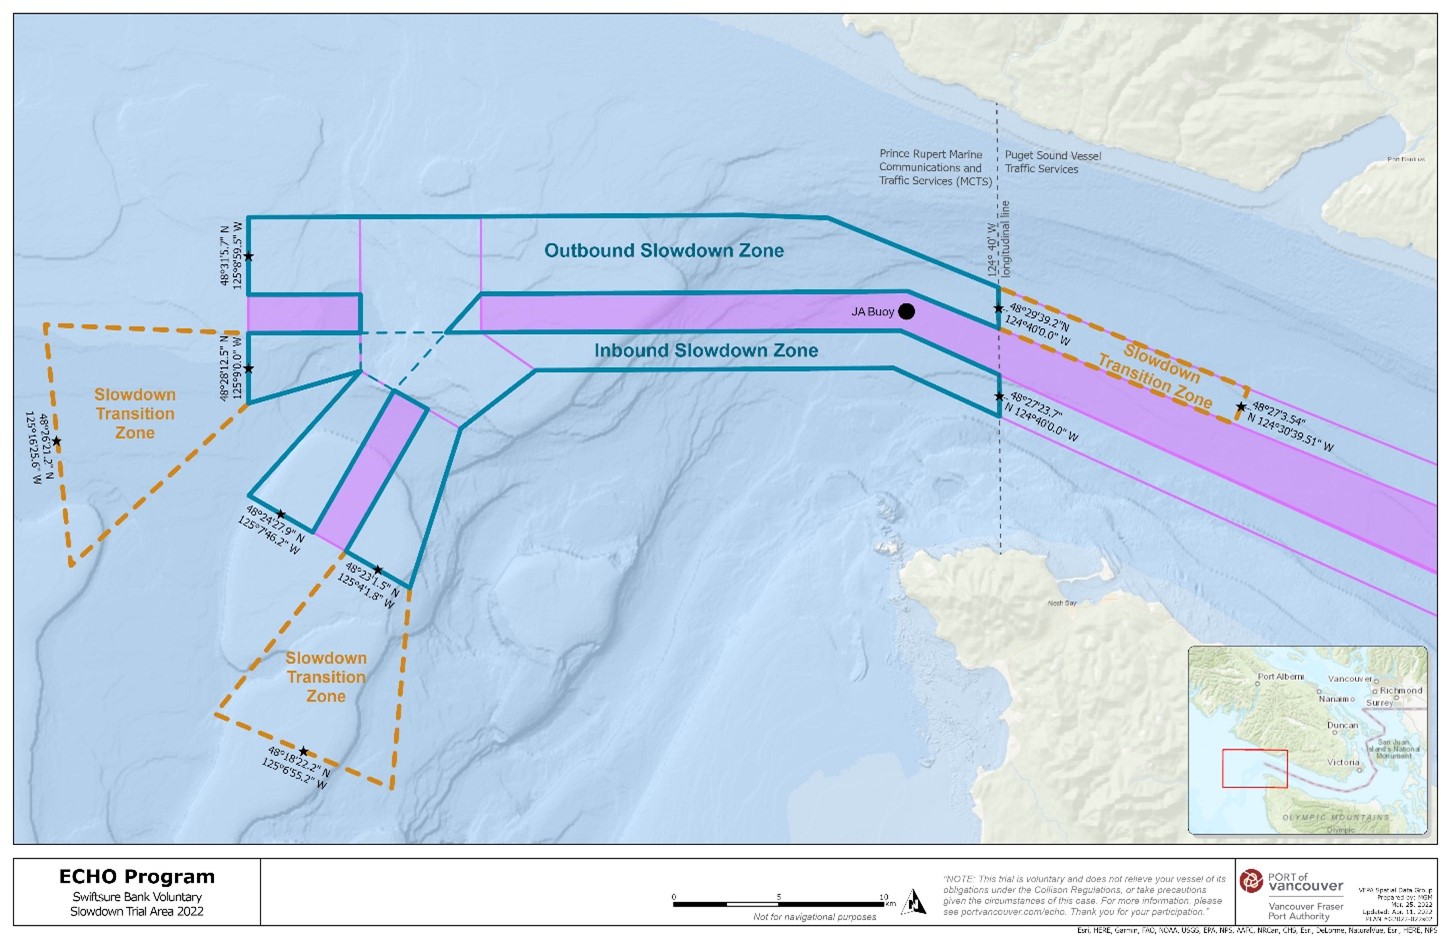 Carte 
                     rectangulaire bleue, orange et mauve, illustrant la zone
                     d'essai de ralentissement volontaire du banc Swiftsure dans
                     le cadre des mesures générales pour les navires dans le
                     dossier des épaulards résidents du sud.